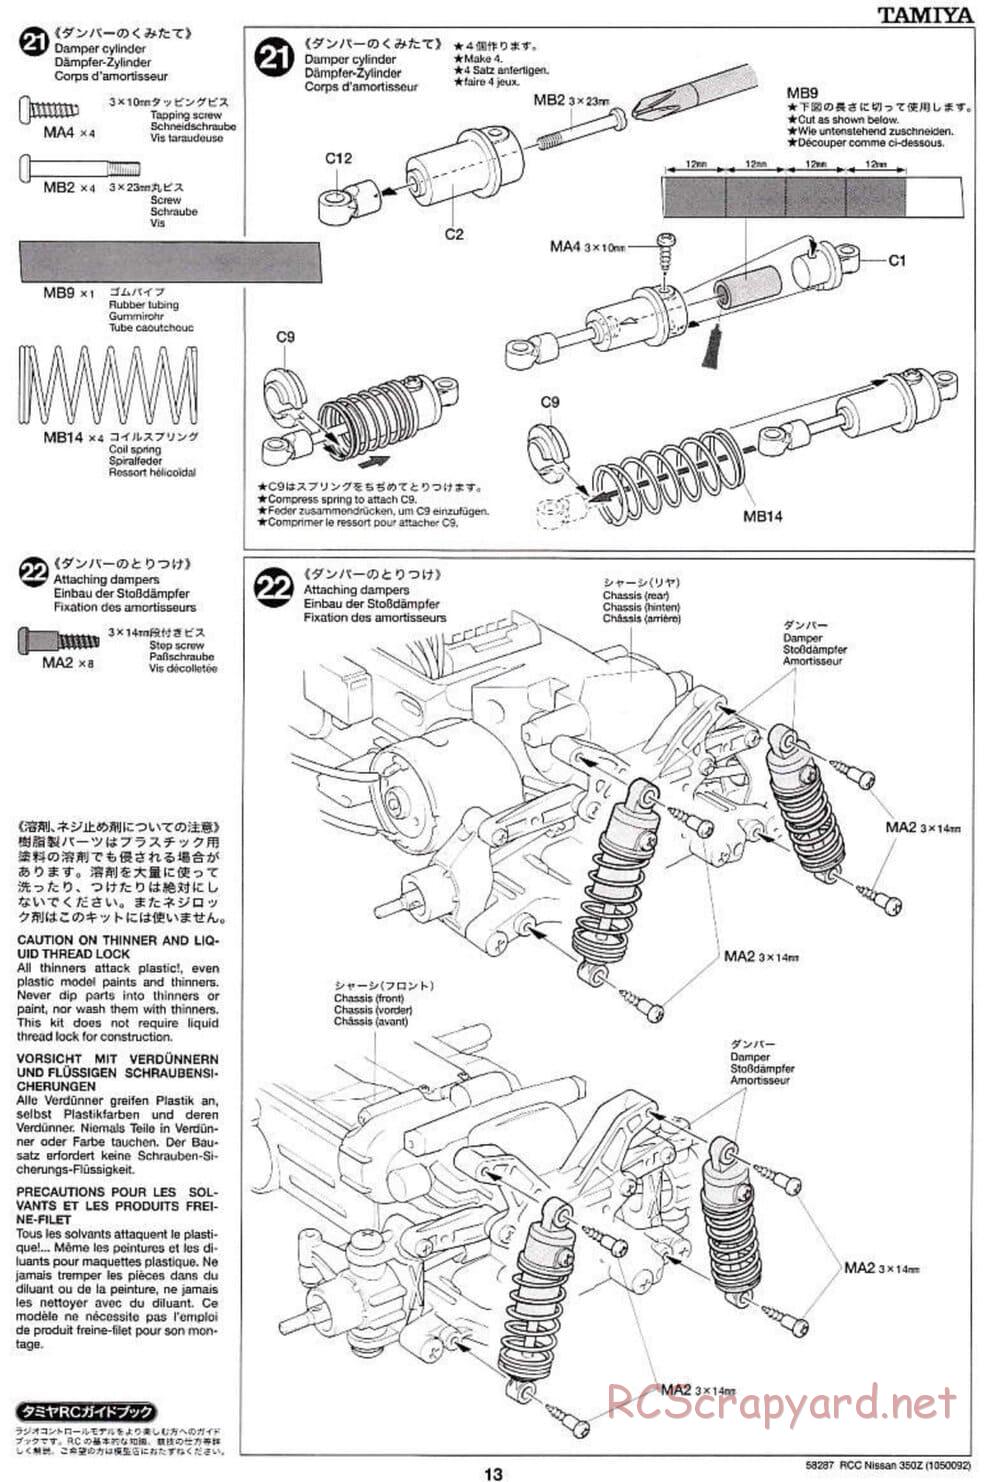 Tamiya - Nissan 350Z - TL-01 Chassis - Manual - Page 13